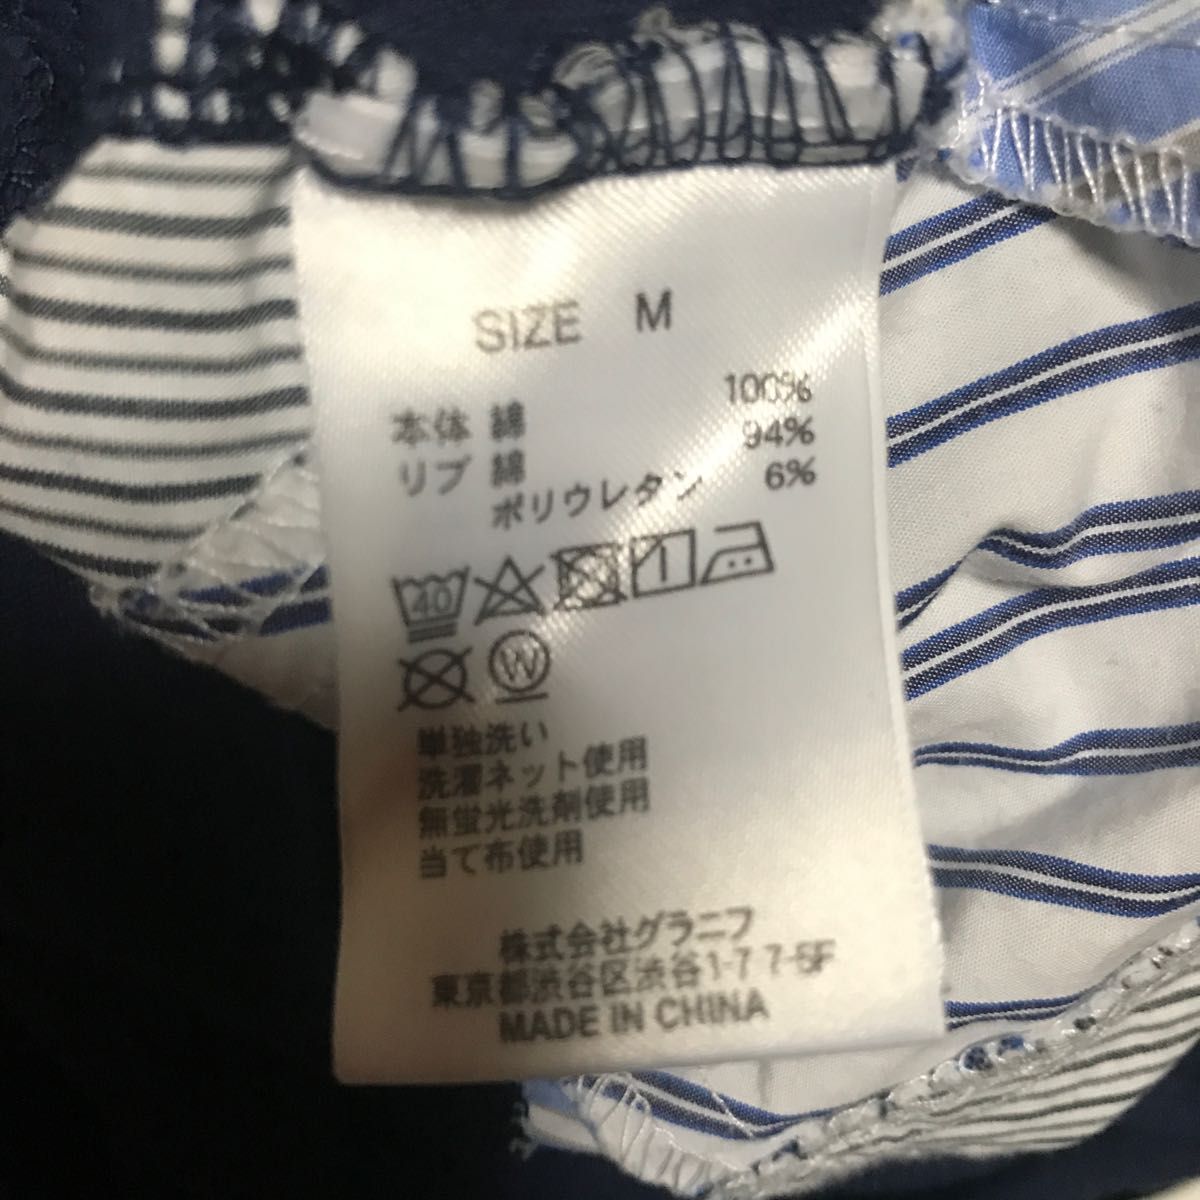 【Design Tshirts Store Granigh】 7分丈 シャツ Mサイズ